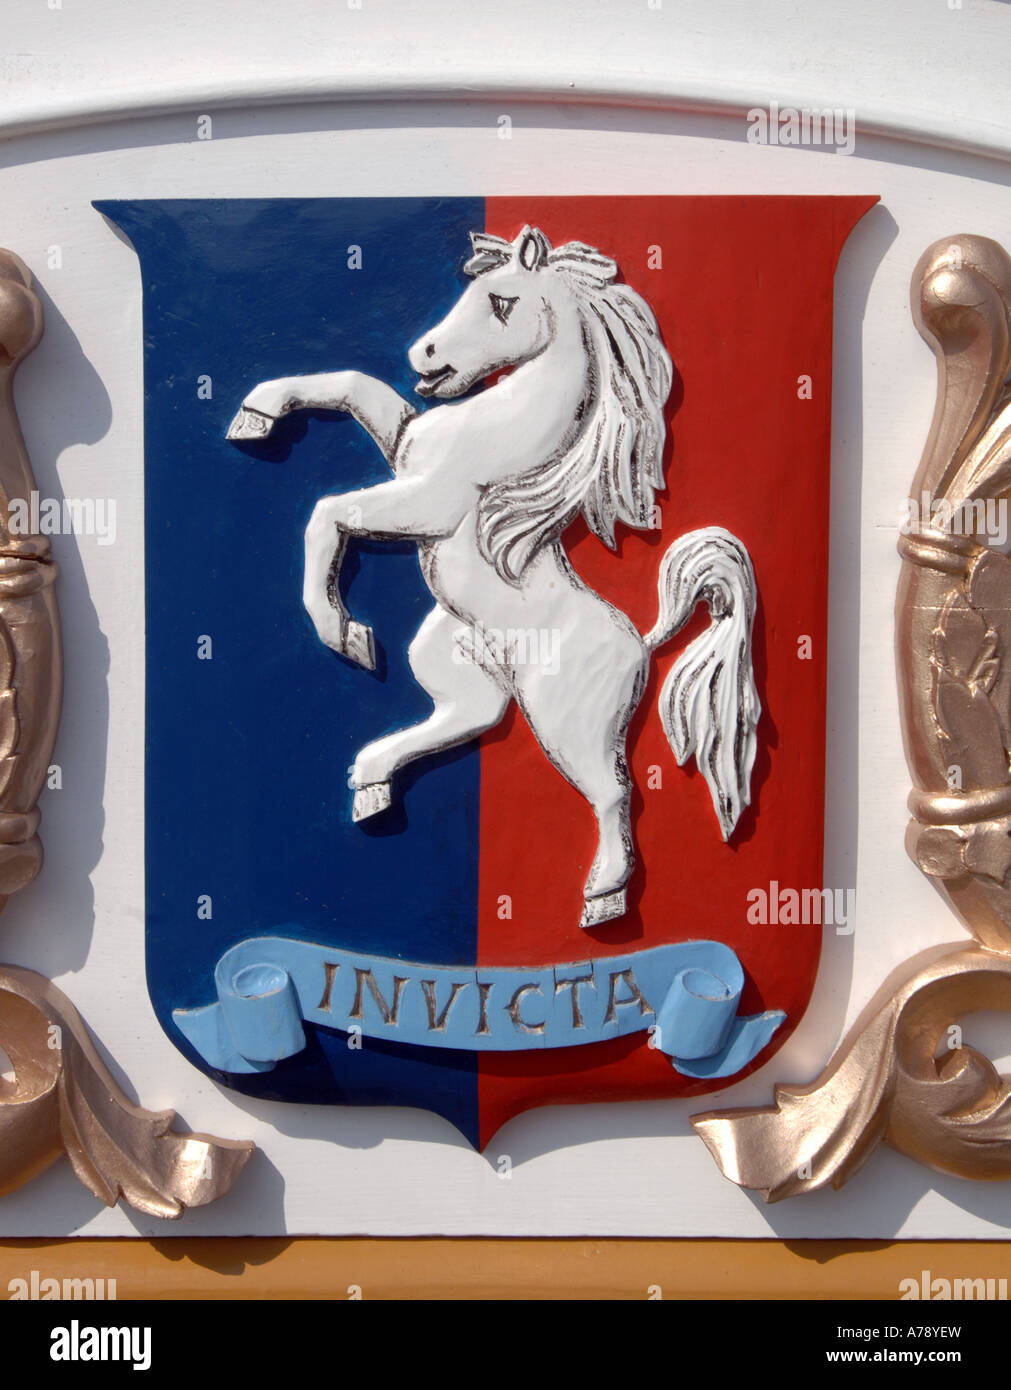 Invicta das weiße Pferd Aufzucht - Symbol für die Grafschaft Kent, England  Stockfotografie - Alamy